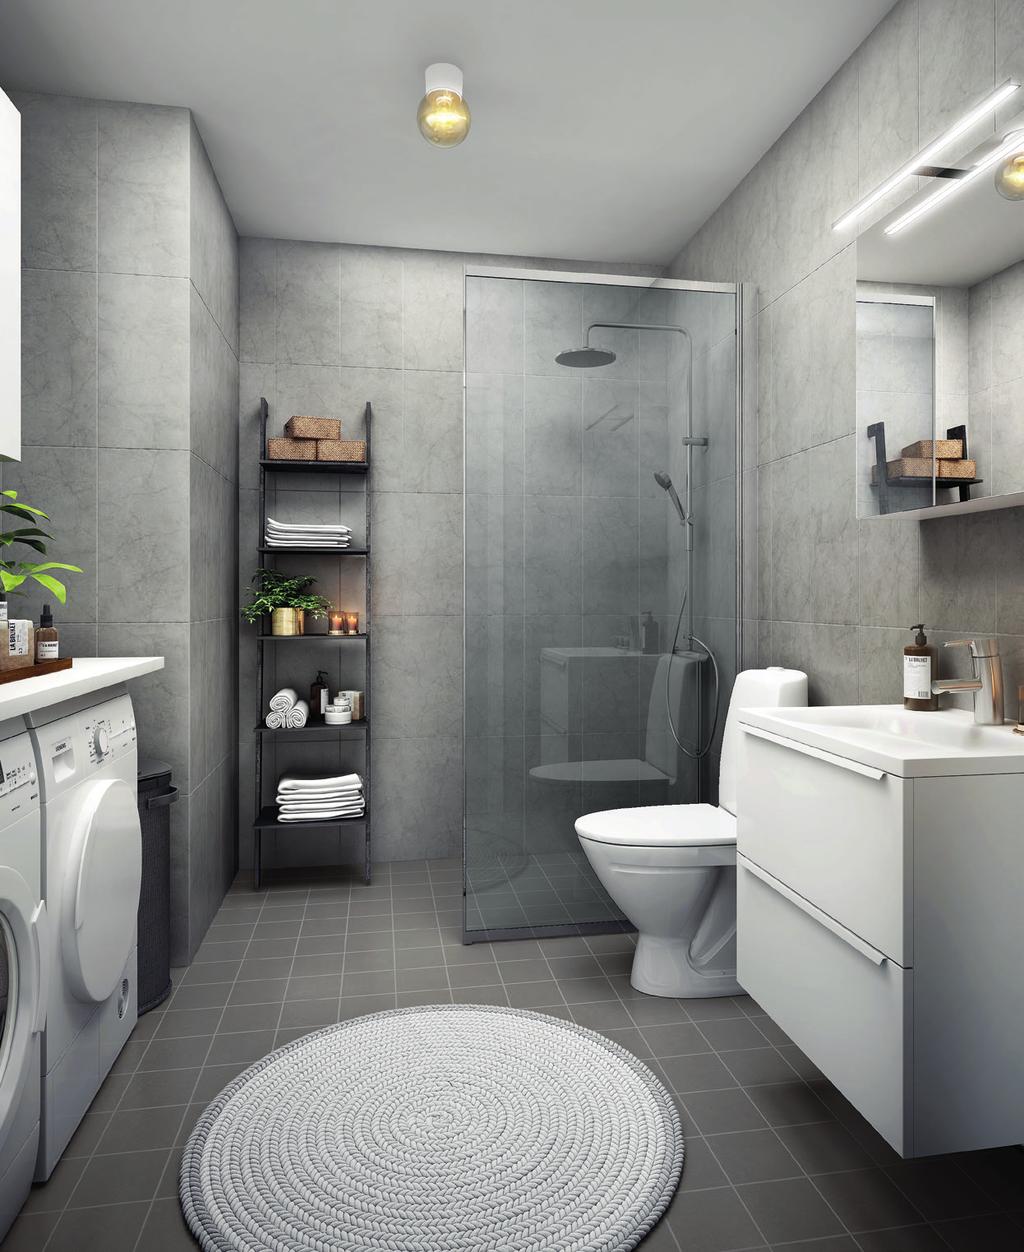 1 2 3 4 Ett sobert helkaklat badrum i grå toner förhöjer din vardag. Komplett med tvättmaskin och torktumlare samt förvaring i kommod och väggskåp.